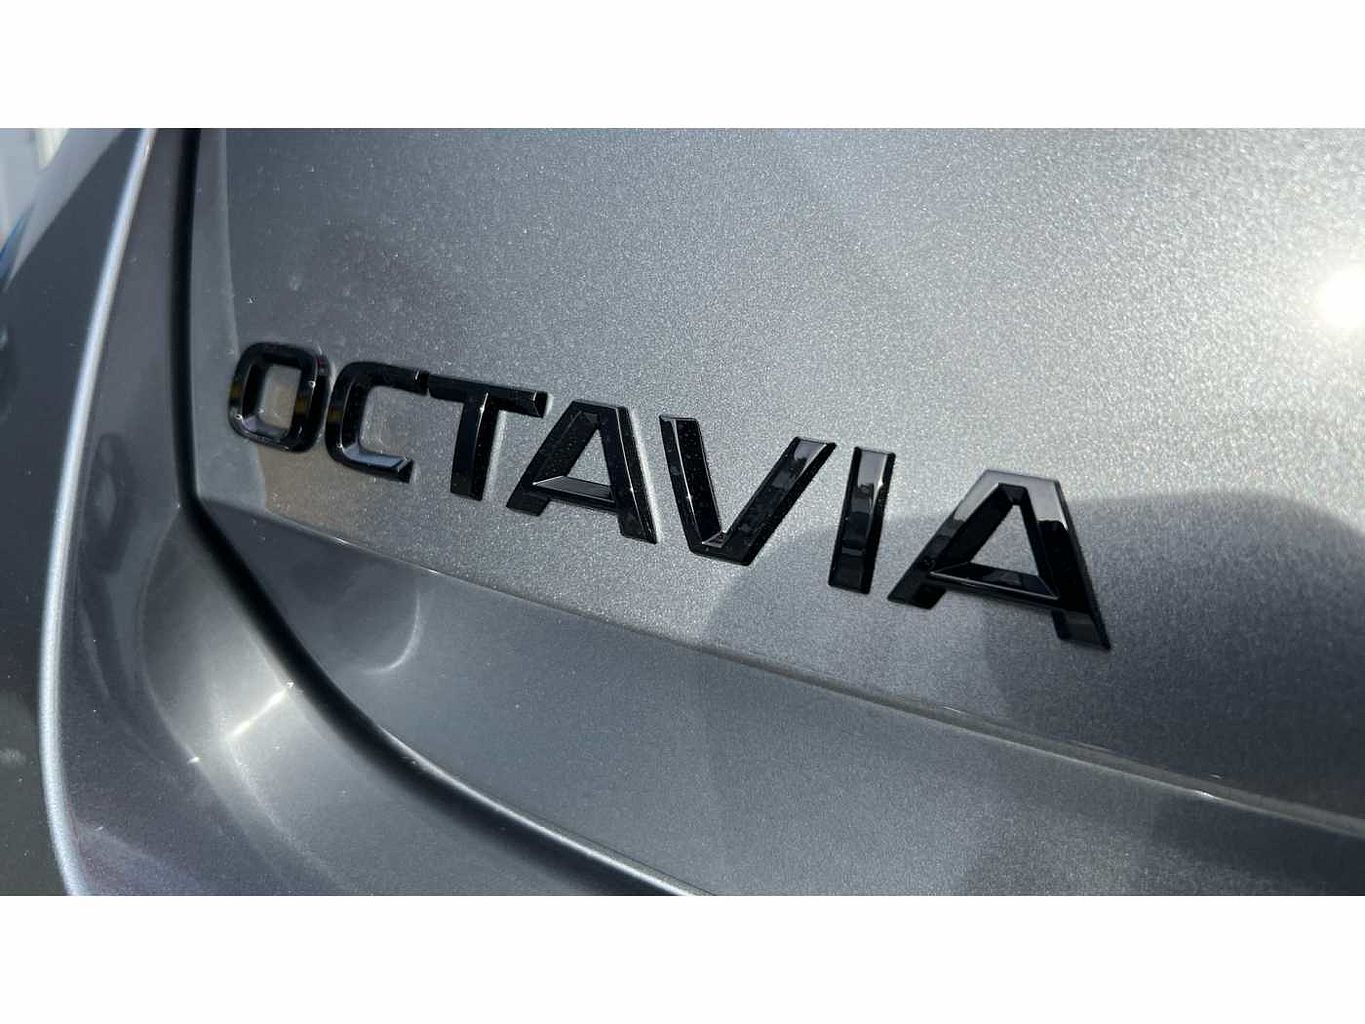 SKODA OCTAVIA Hatch vRS 2.0 TSI 245 PS DSG